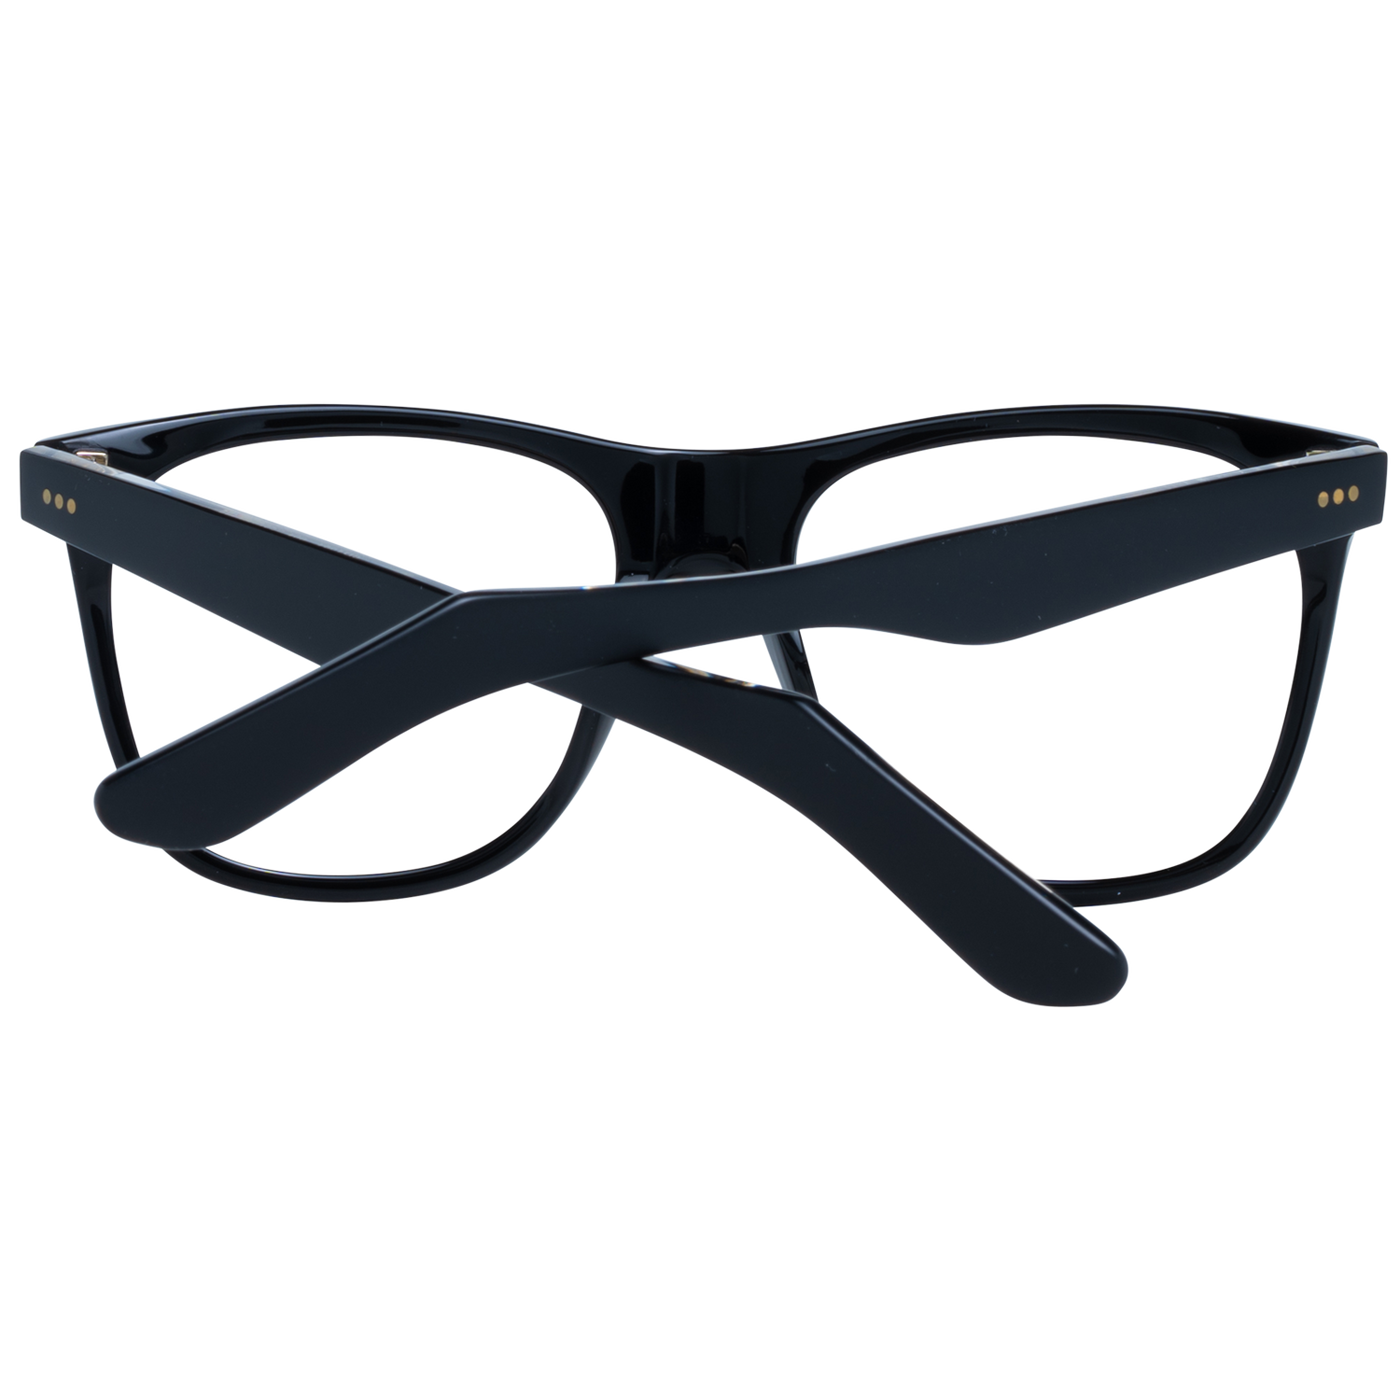 Sandro Black Unisex Optical Frames